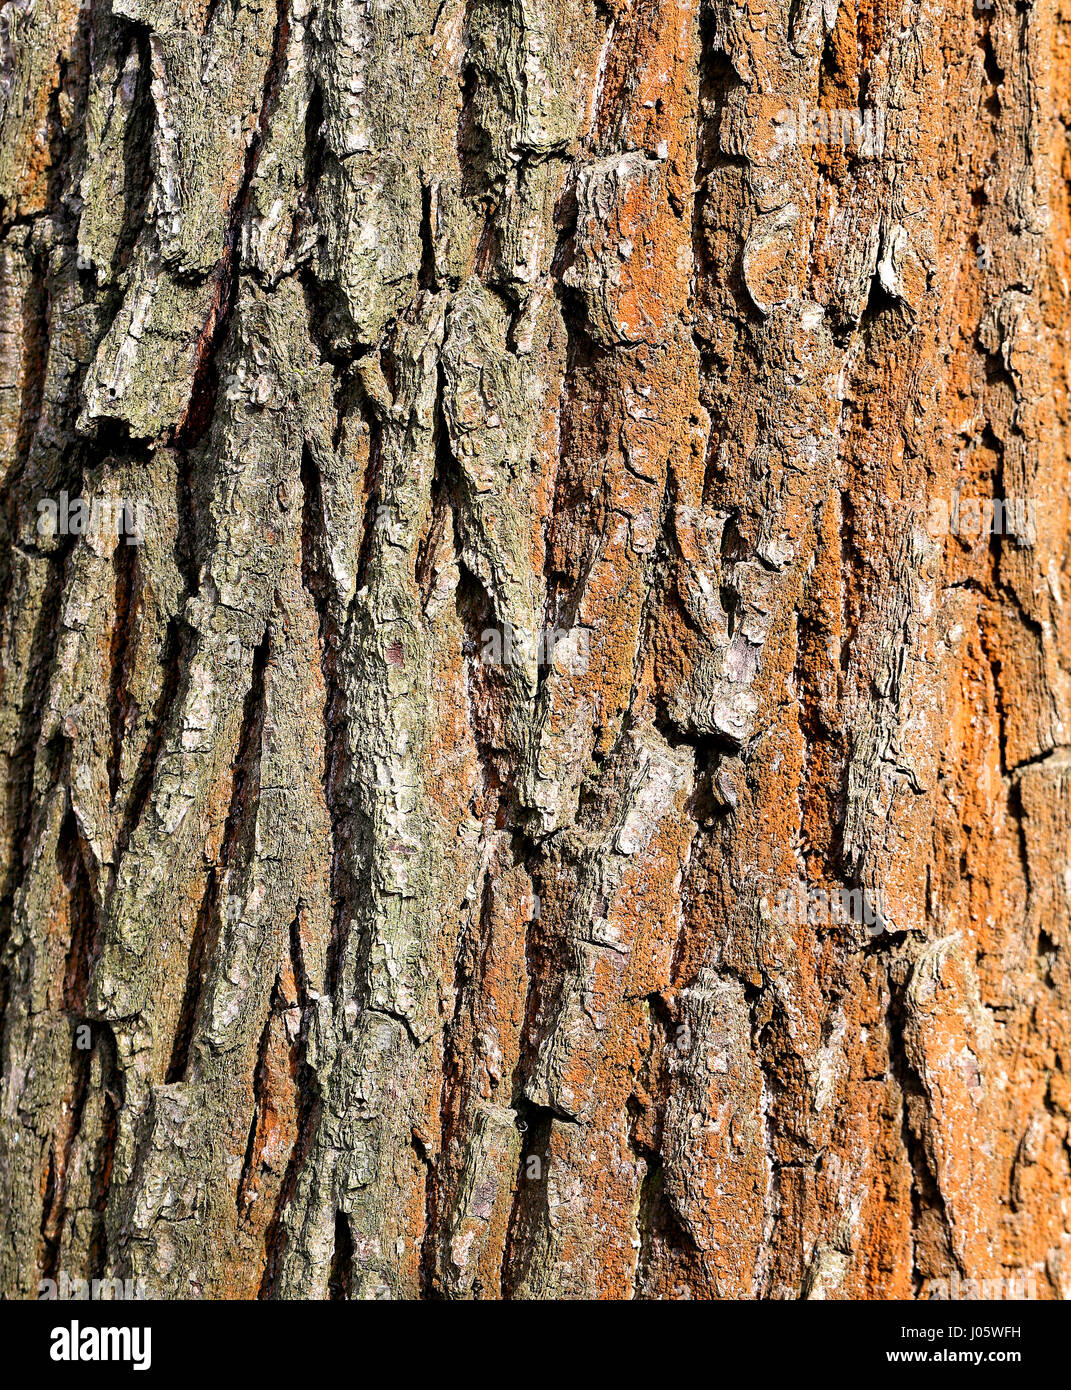 Fototexturen eines alten Baumes Stockfoto